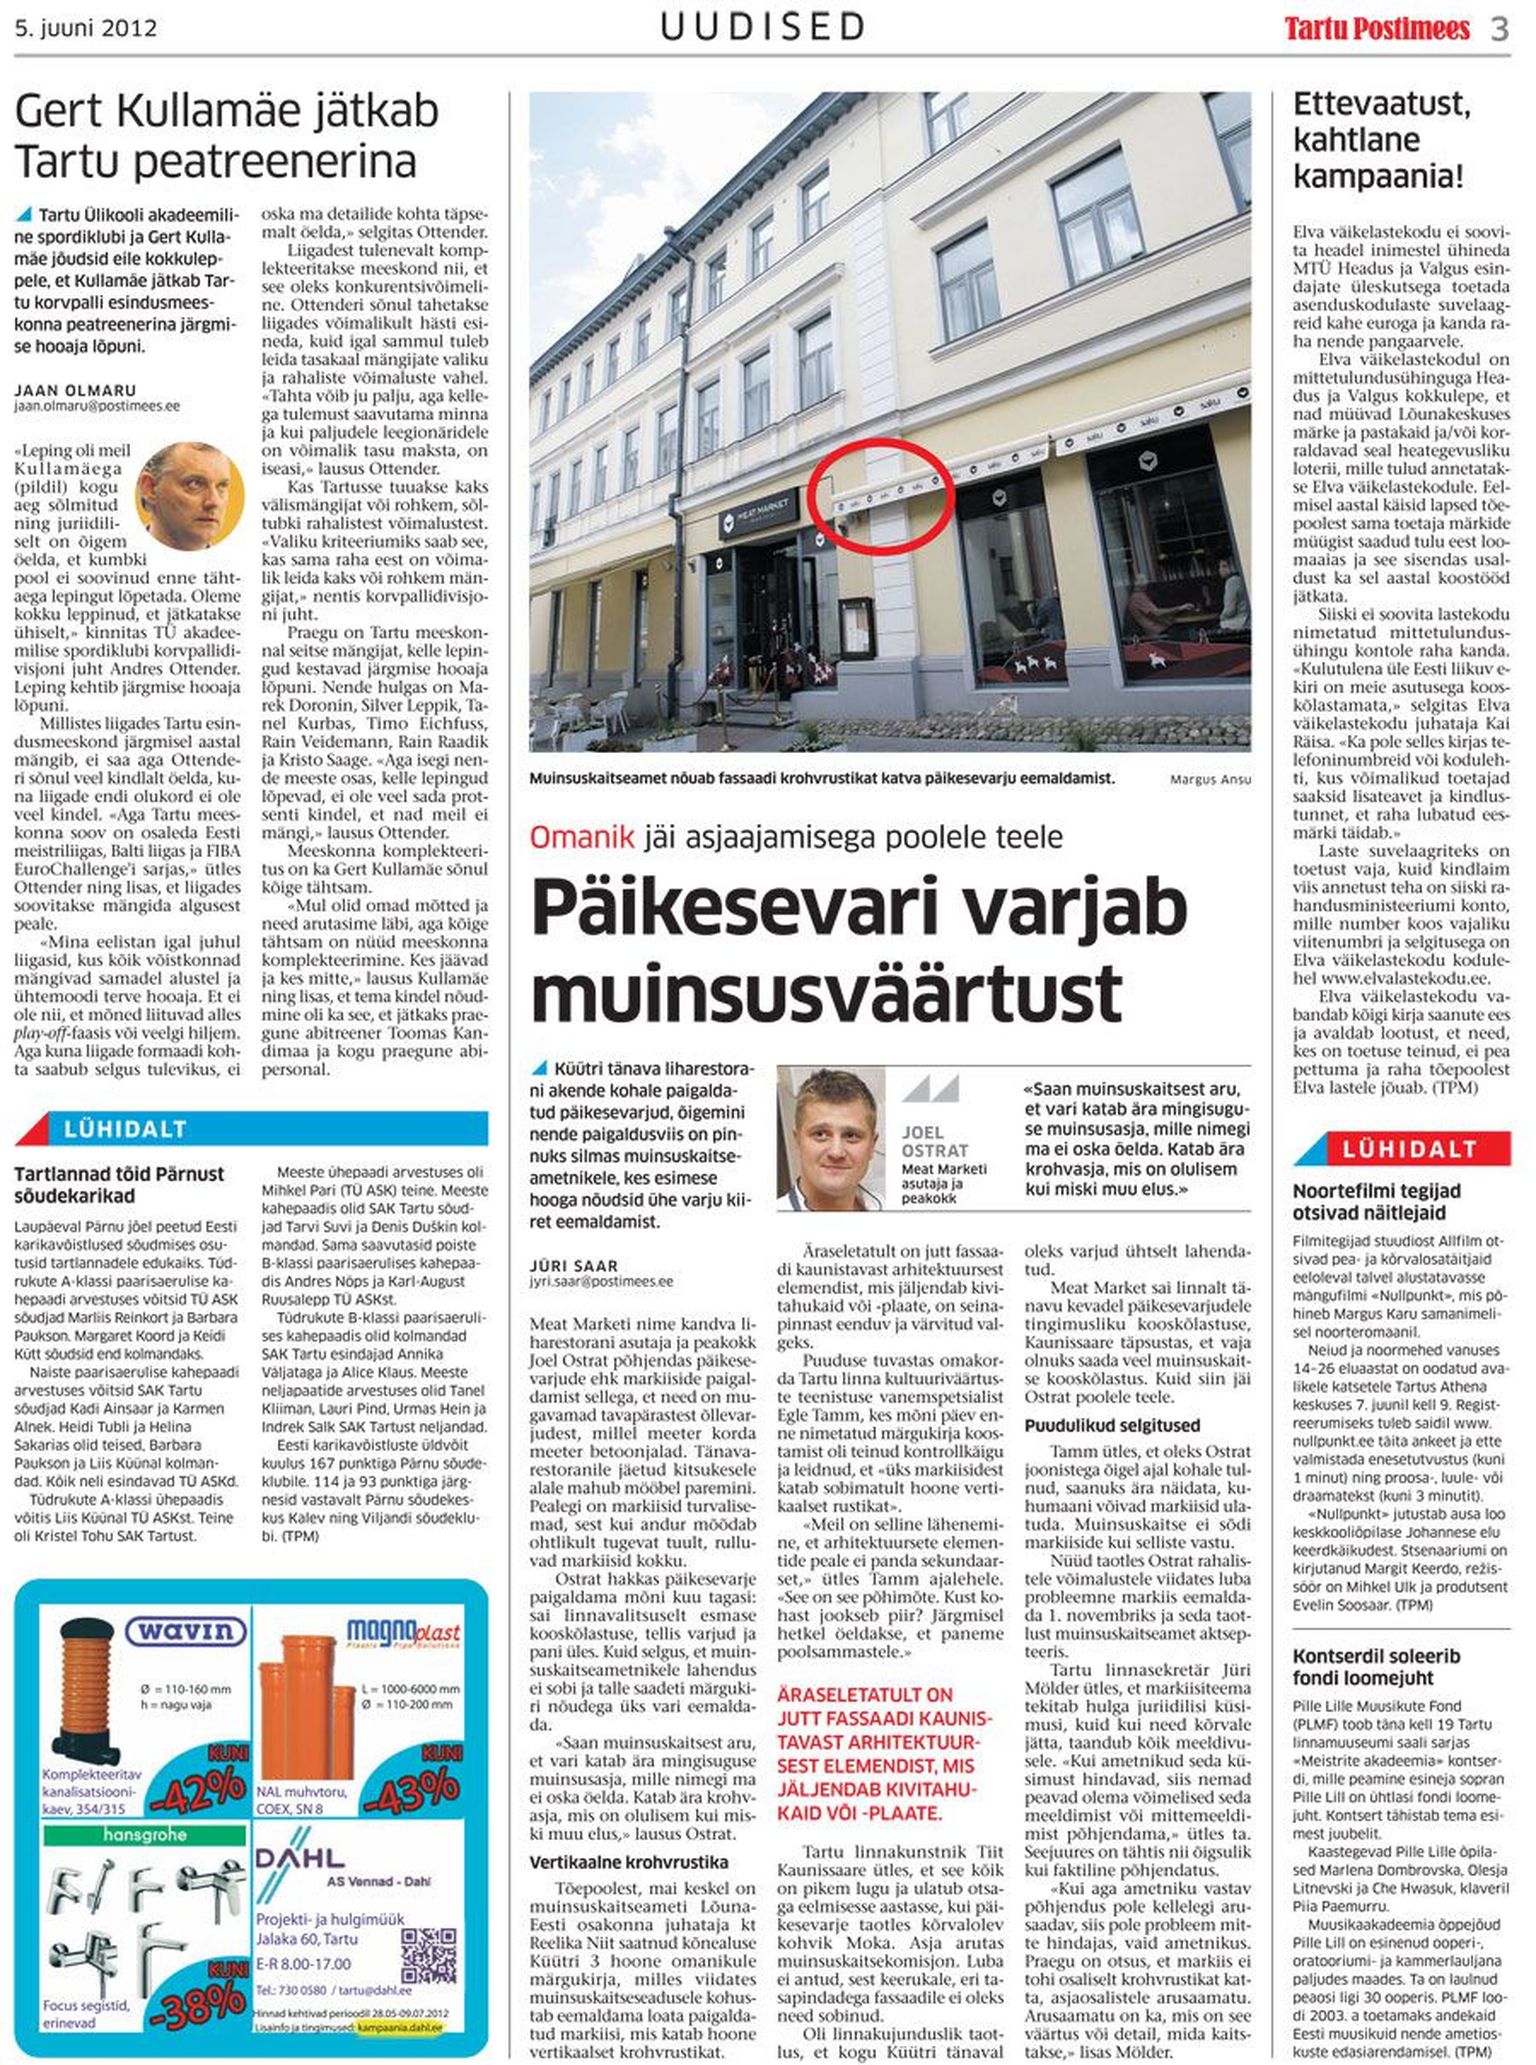 Tartu Postimees kirjutas eile, et  restorani Meat Market päevavari on paigaldatud nii, et see ulatub üle arhitektuurse elemendi, krohvrustika.